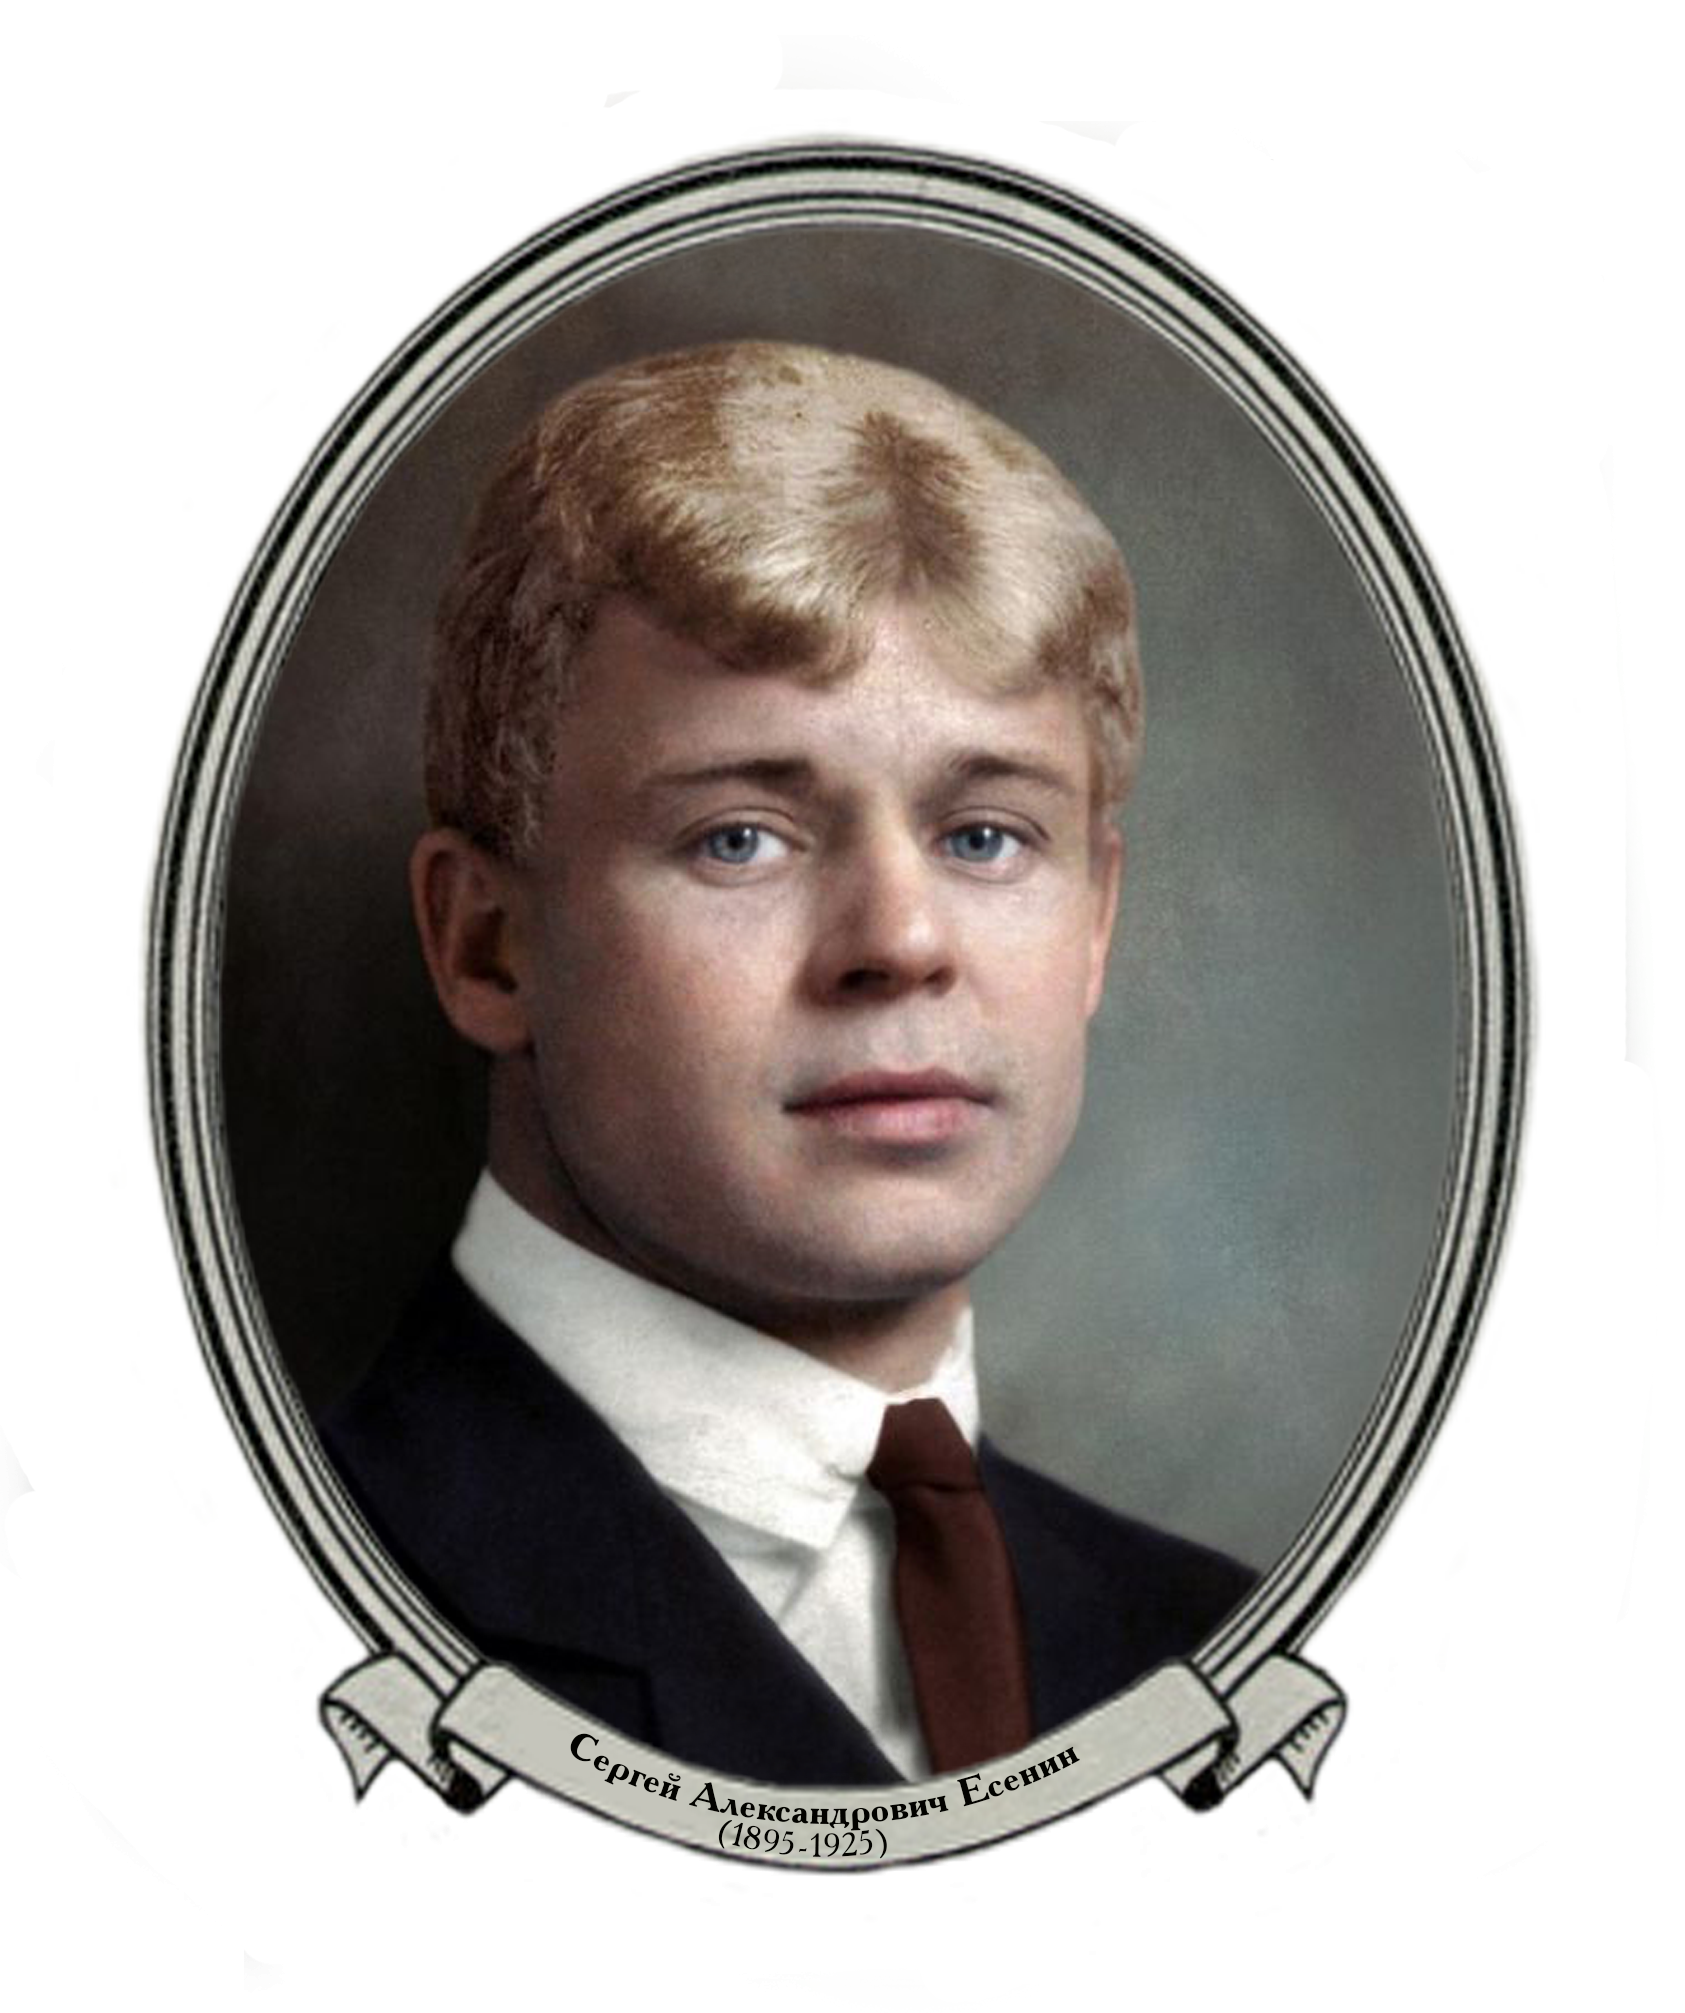 Круг писатели. Есенин портрет. Портрет Сергея Александровича Есенина.